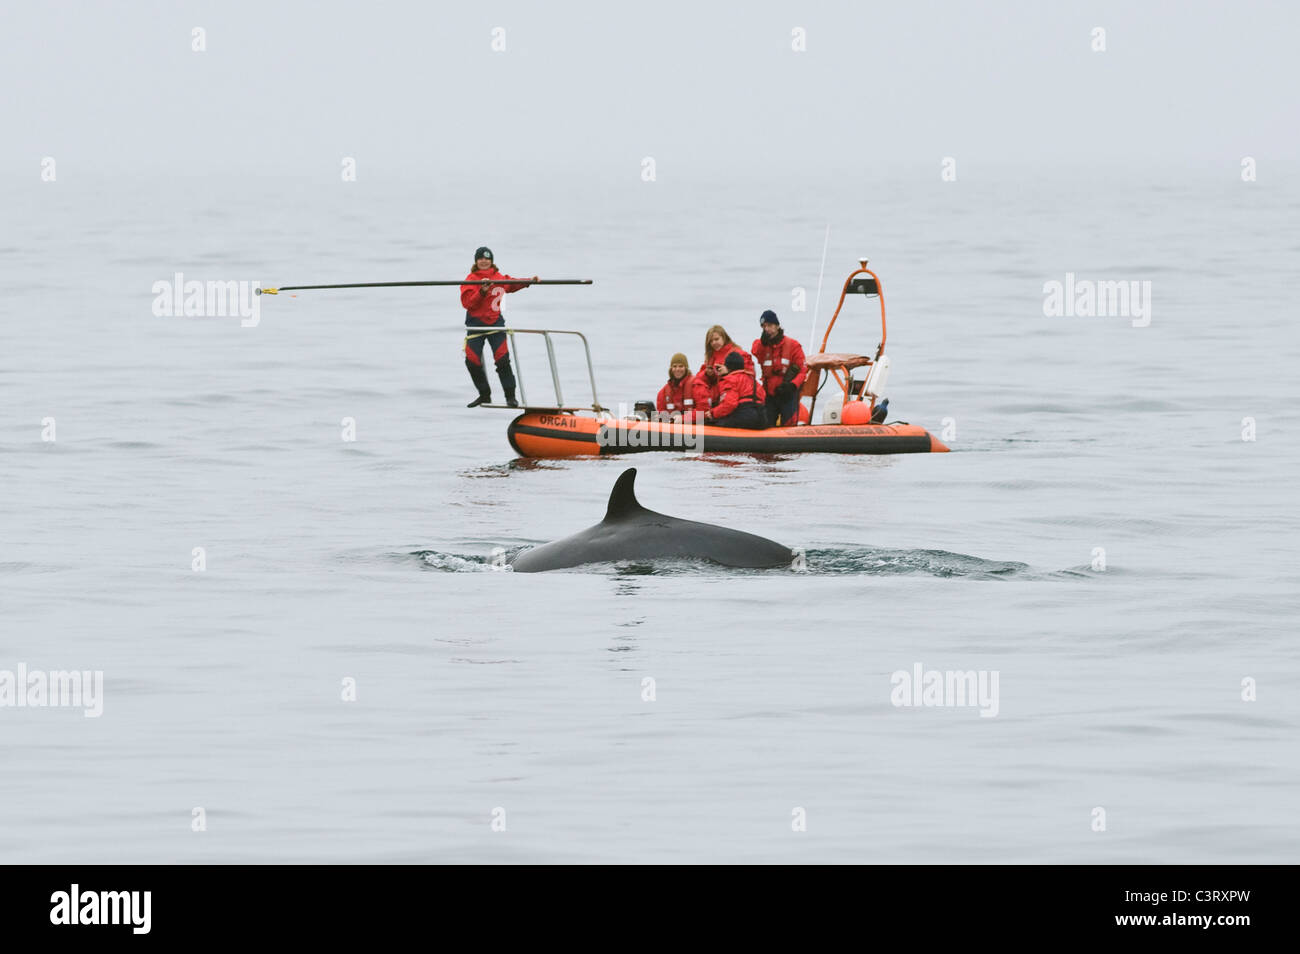 Marquage d'une baleine noire (Balaenoptera acutorostrata) . Unité de recherche et de sauvetage de cétacés, Moray Firth, Écosse, Royaume-Uni. Banque D'Images